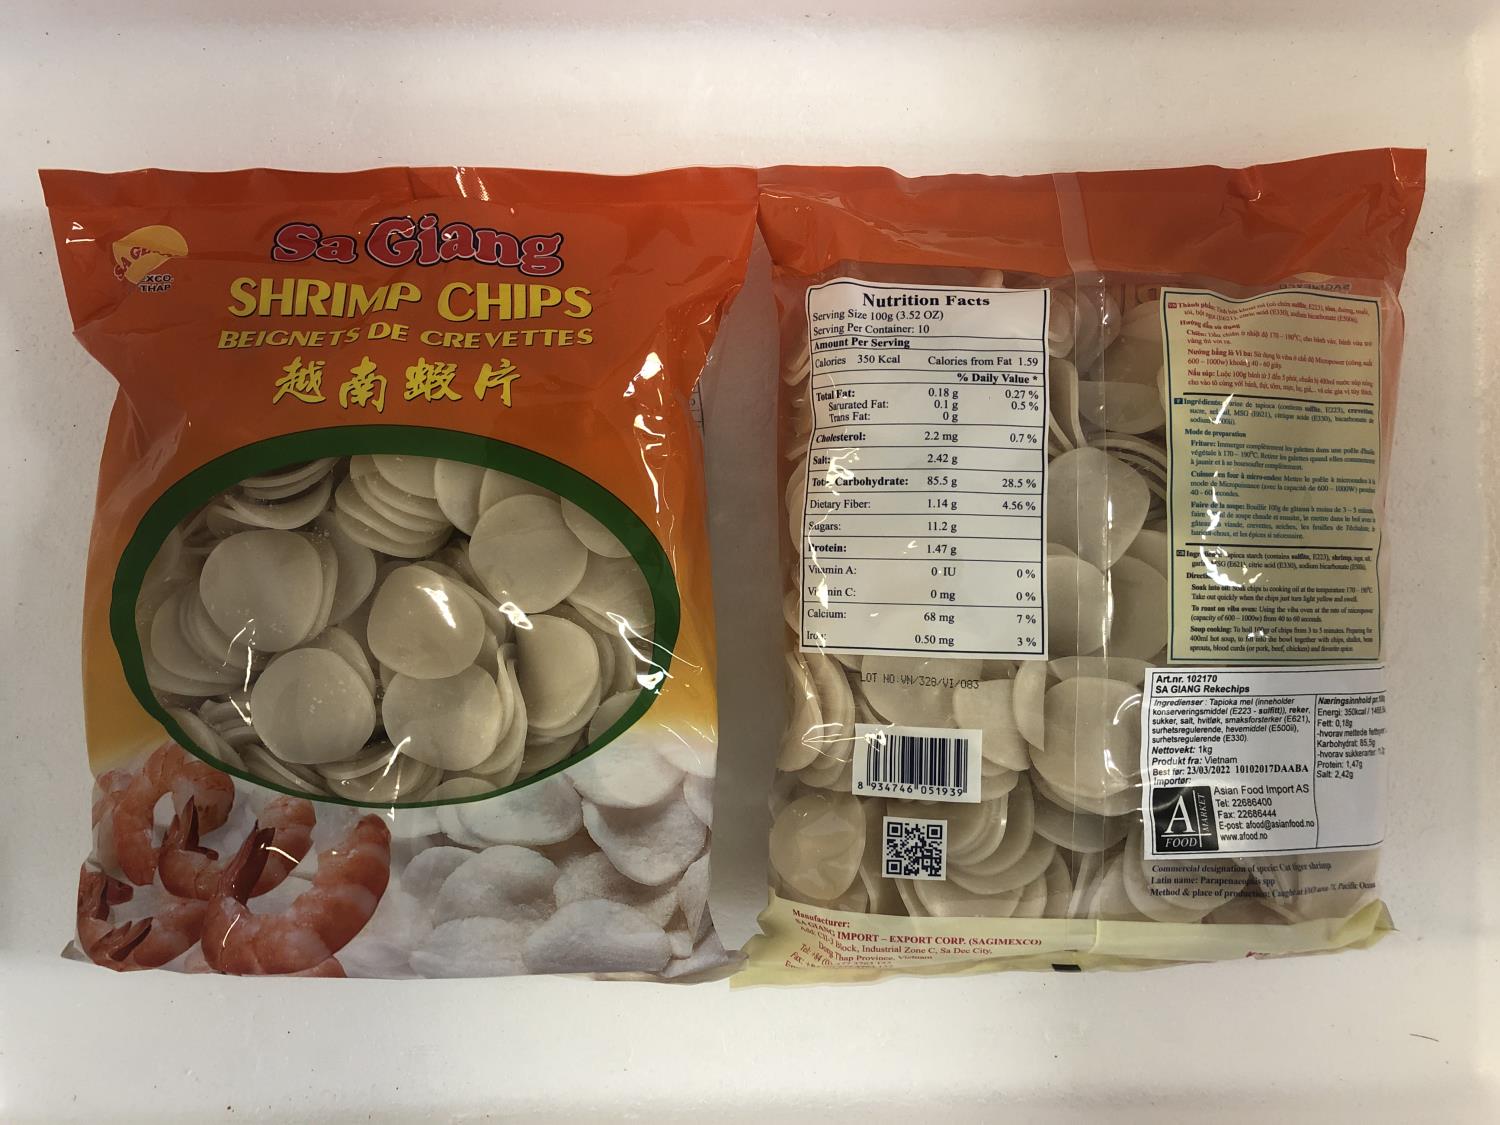 'SA GIANG Shrimp Chips 1kg å